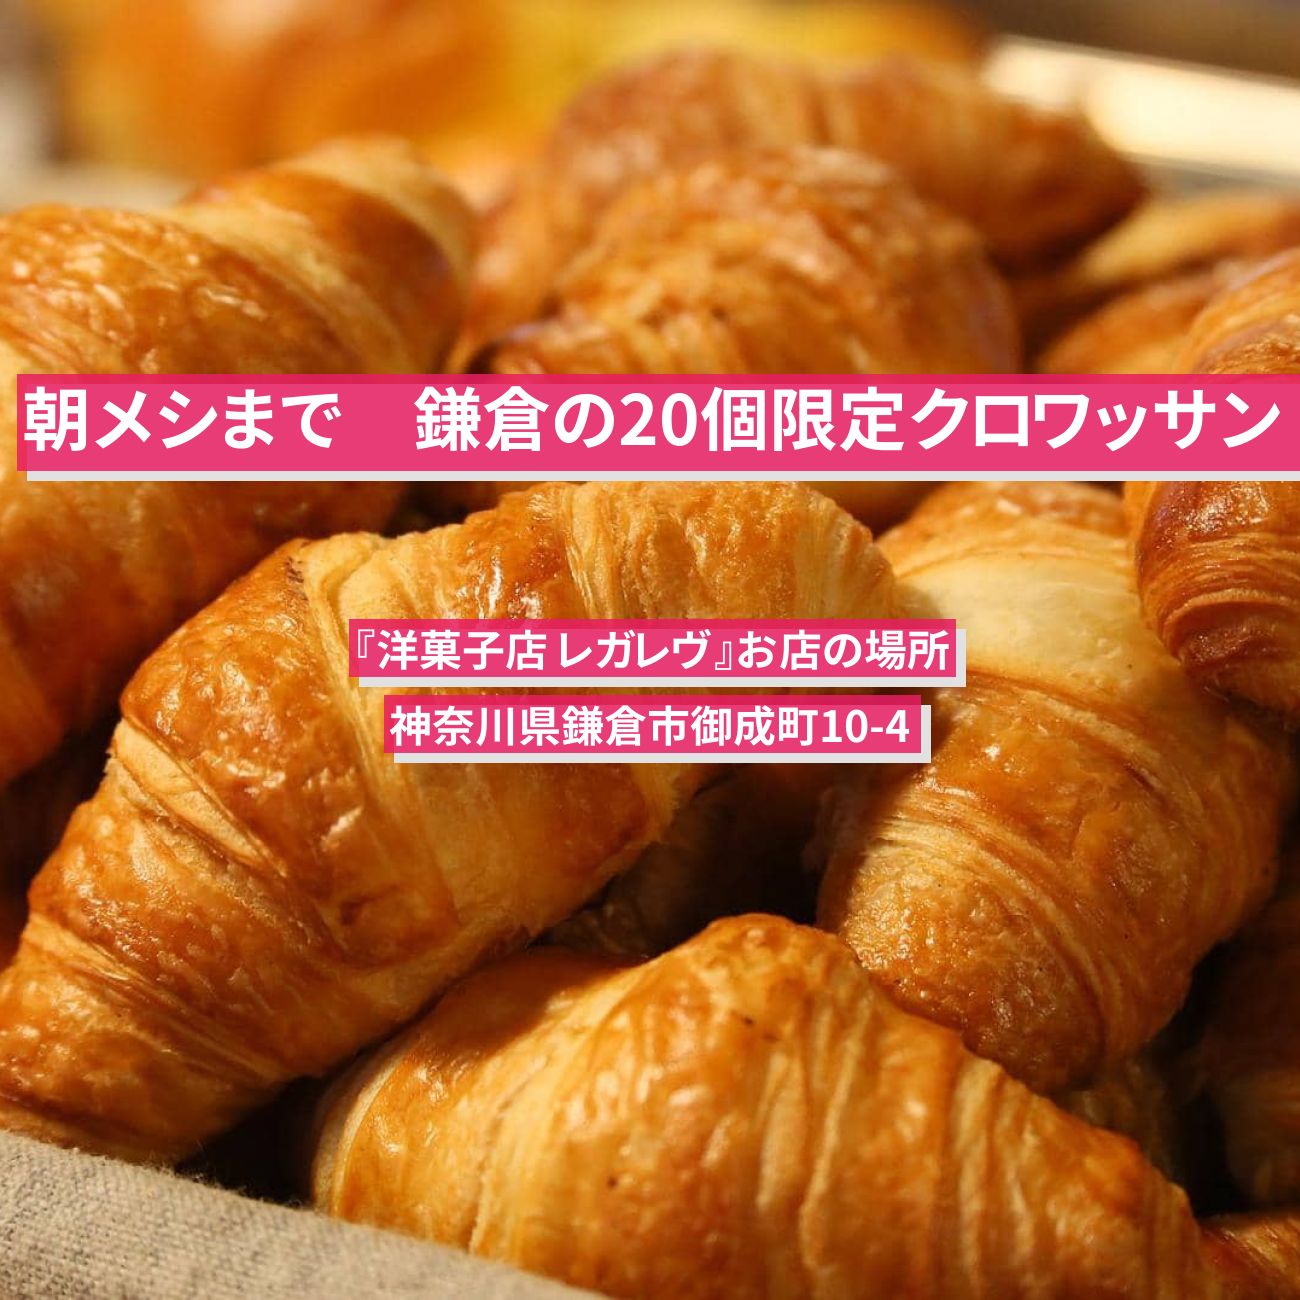 【朝メシまで】鎌倉の20個限定トリュフのクロワッサン『洋菓子店 レガレヴ』お店の場所